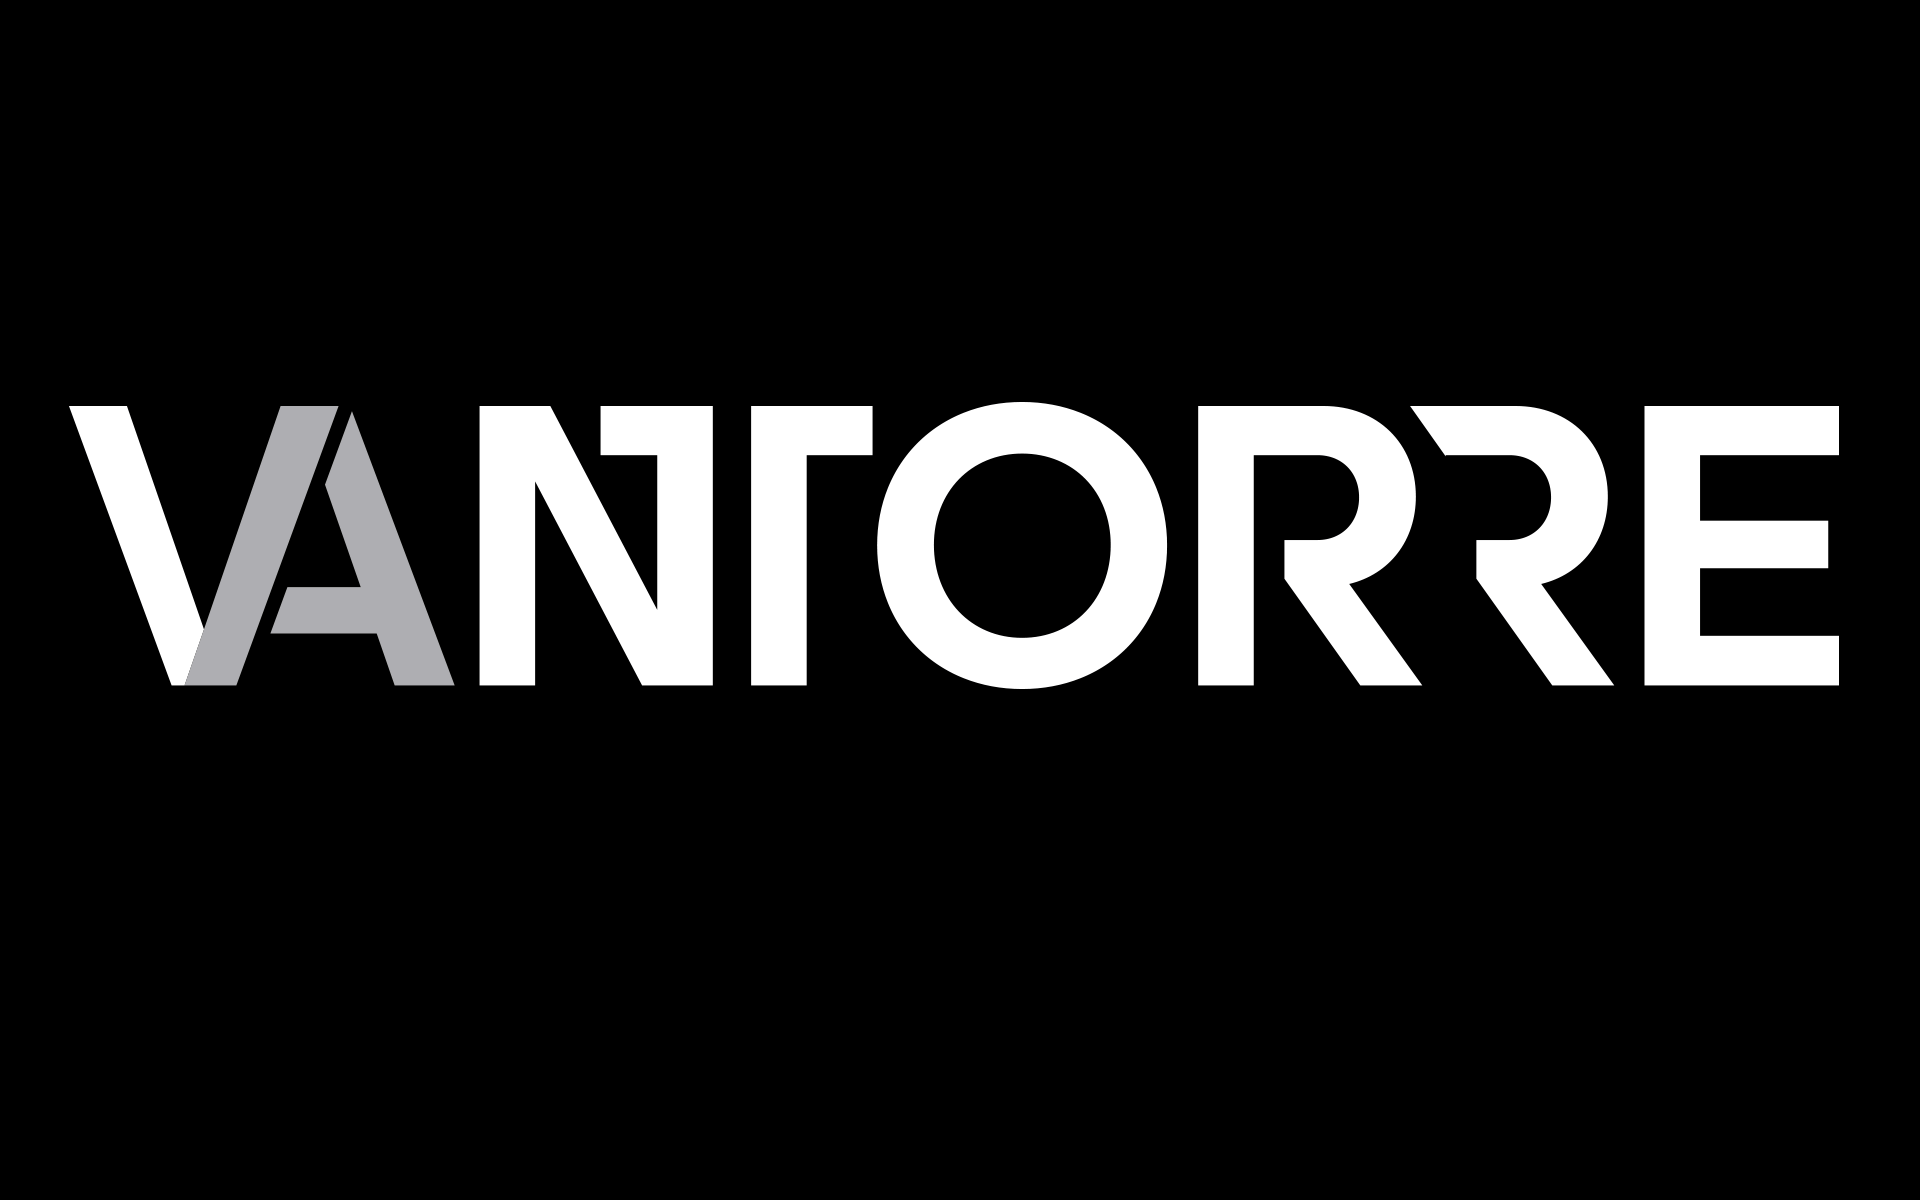 Corporate Design Andreas Vantorre, Logotype-Entwicklung, Schwarz-Weiß-Version